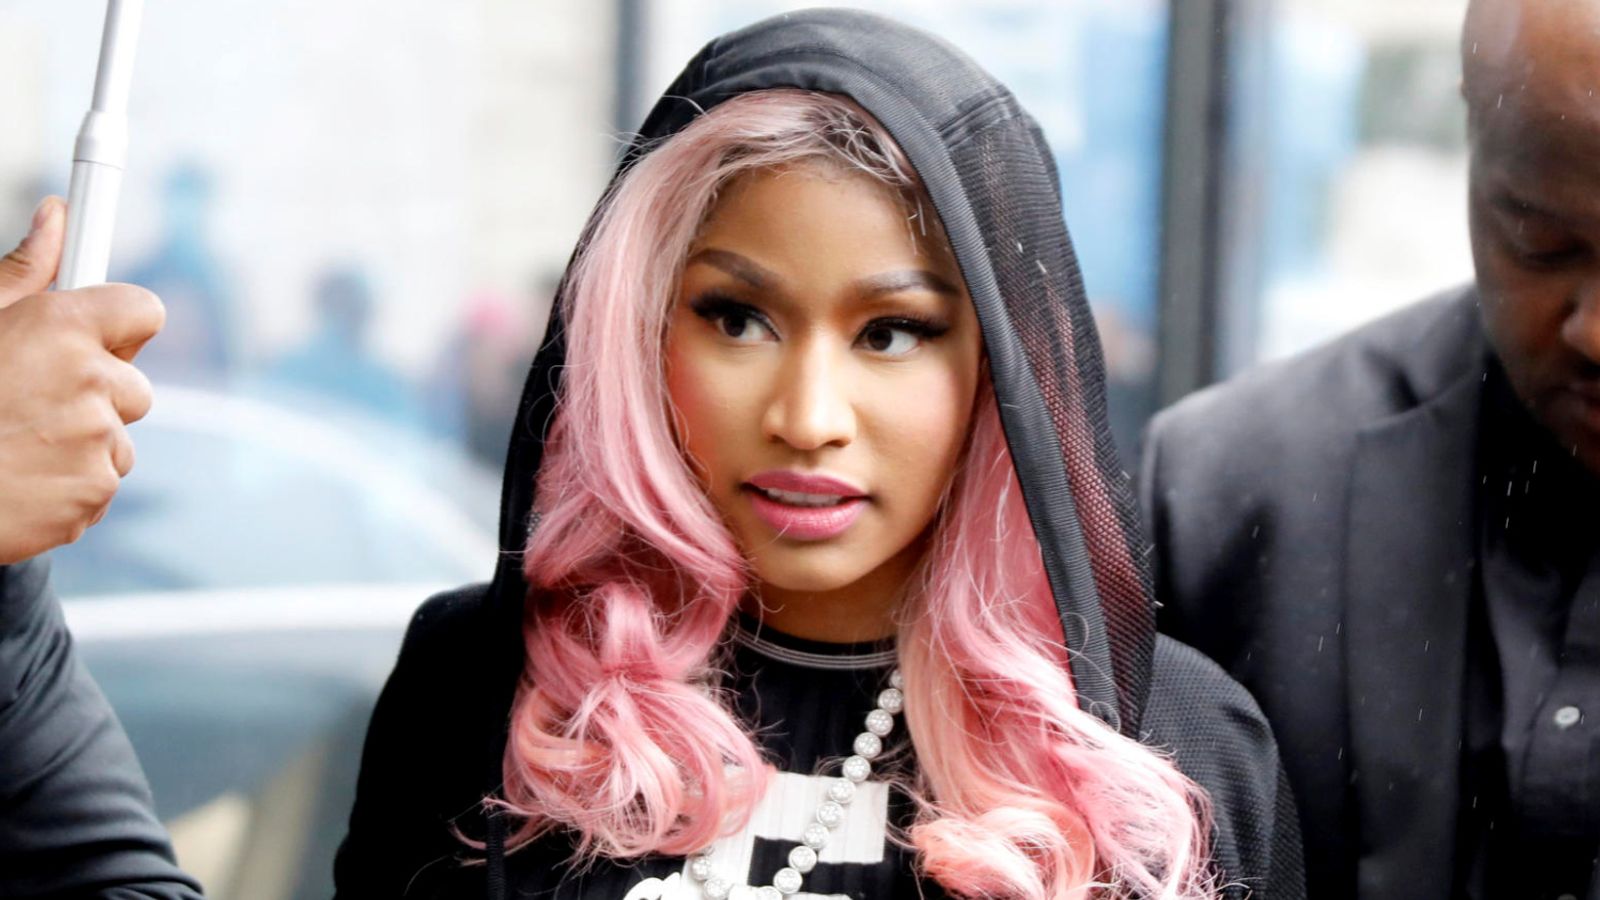 Nicki Minaj blasts 'disgusting treatment' following arrest in Amsterdam